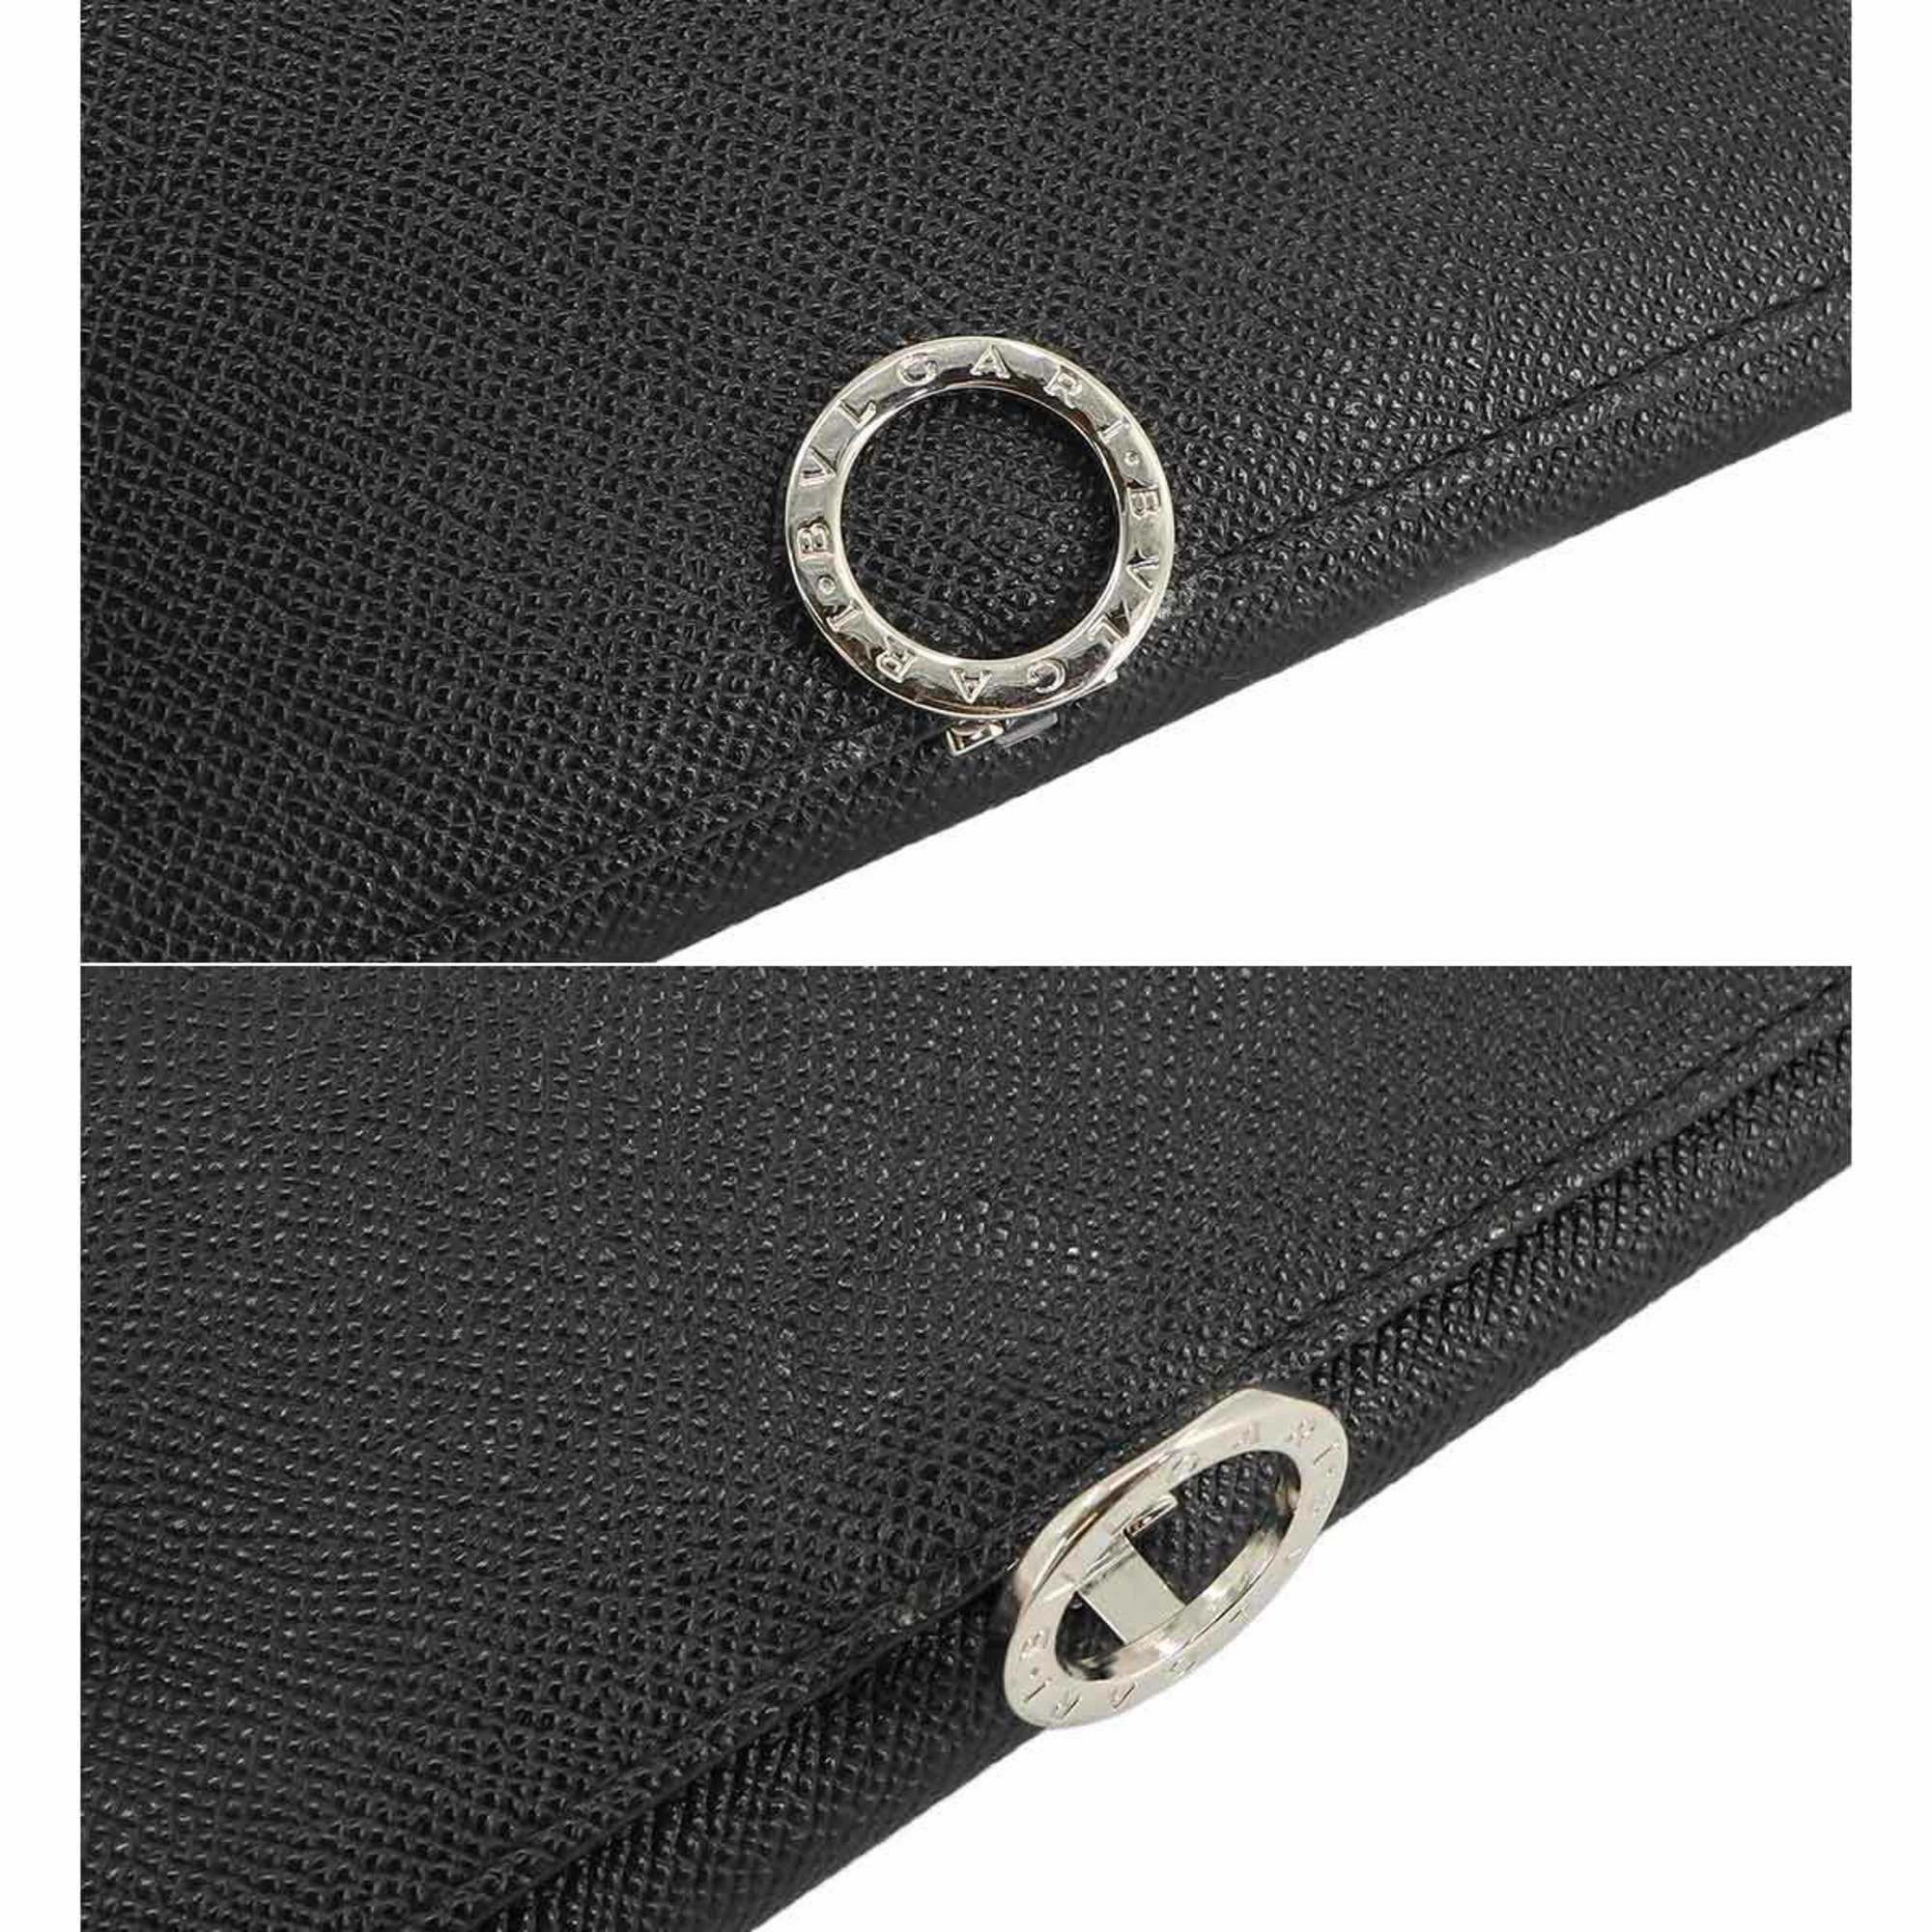 BVLGARI Bi-fold Long Wallet Leather Black 35939 Silver Metal Clip